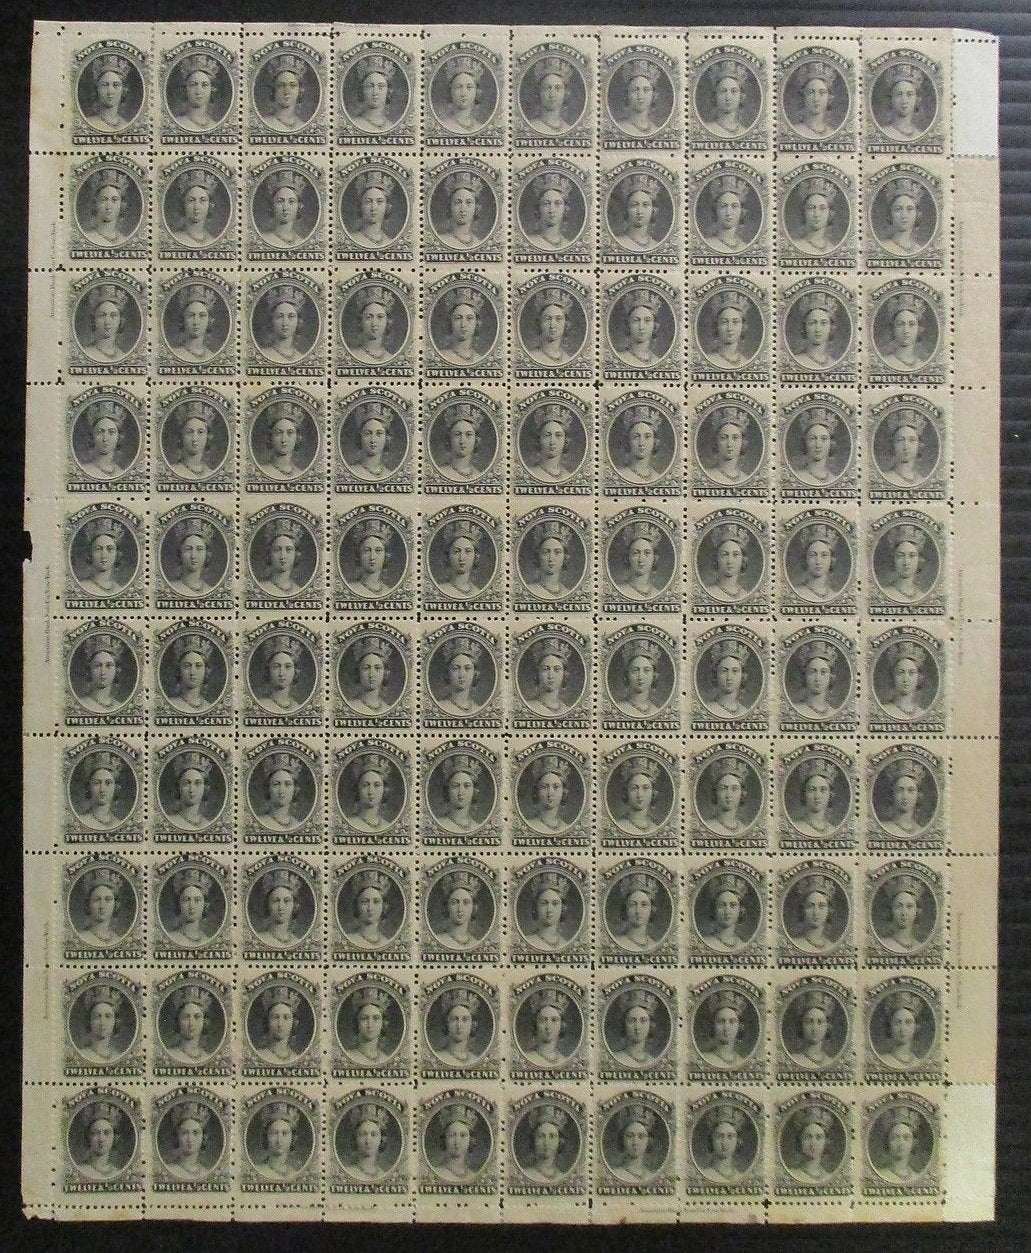 0013NS1708 - Nova Scotia #13 - Mint Sheet of 100